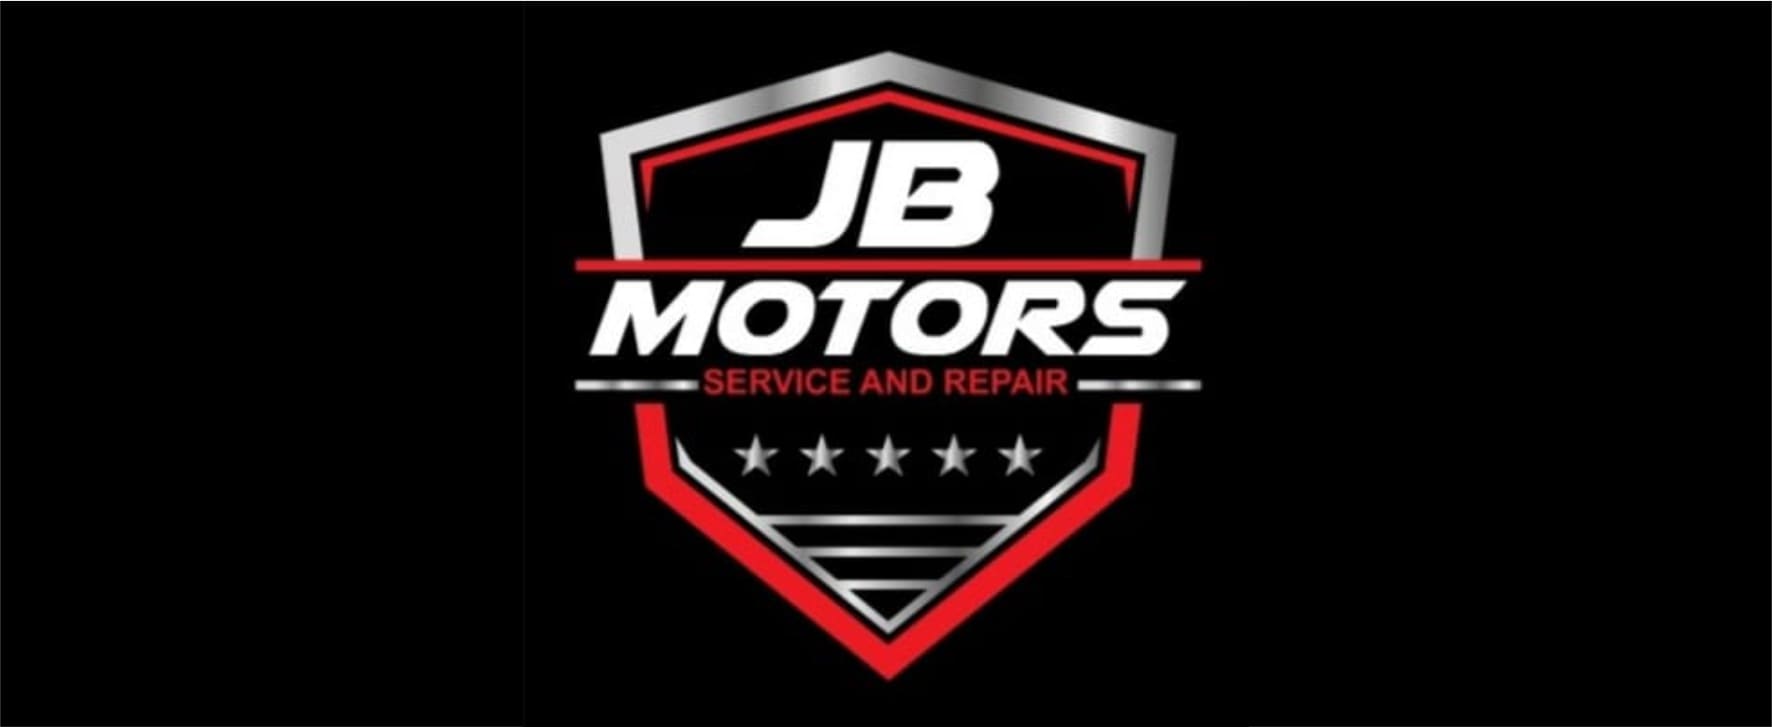 Empresa colaboradora - JB Motors